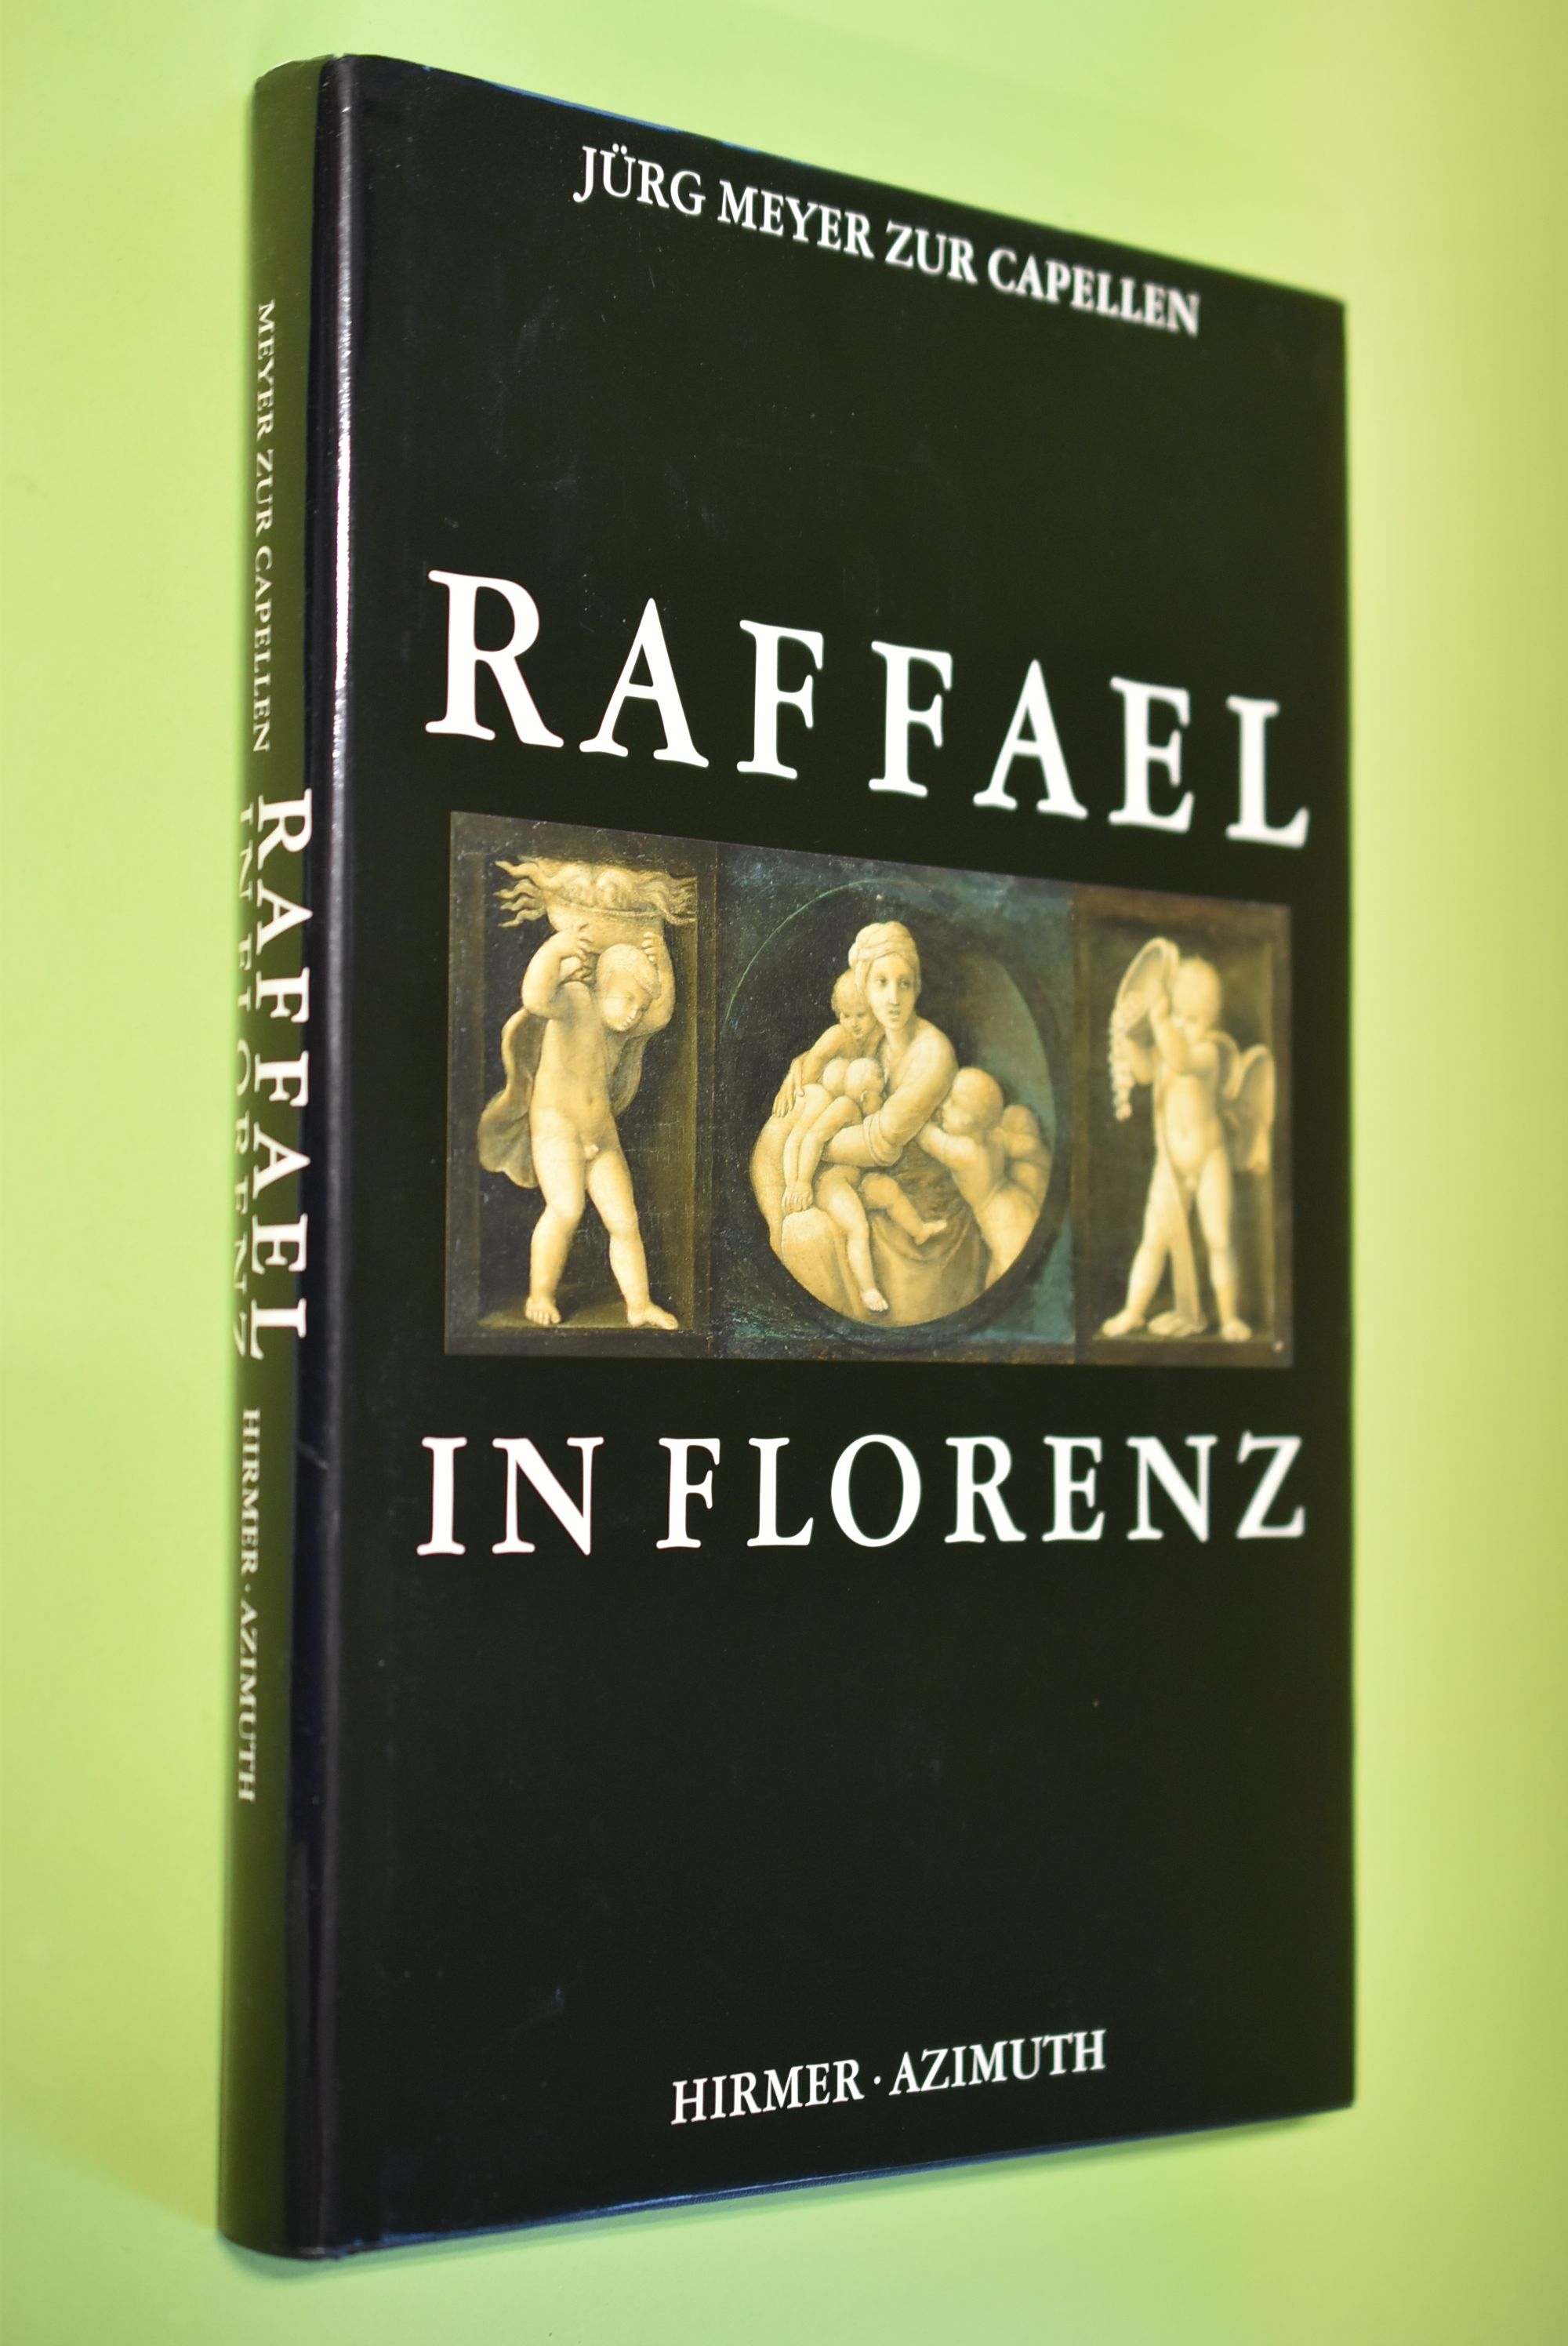 Raffael in Florenz. von Jürg Meyer Zur Capellen. [Für das Raffael-Projekt, Münster/Würzburg] - Meyer zur Capellen, Jürg und Raffael (Illustrator)